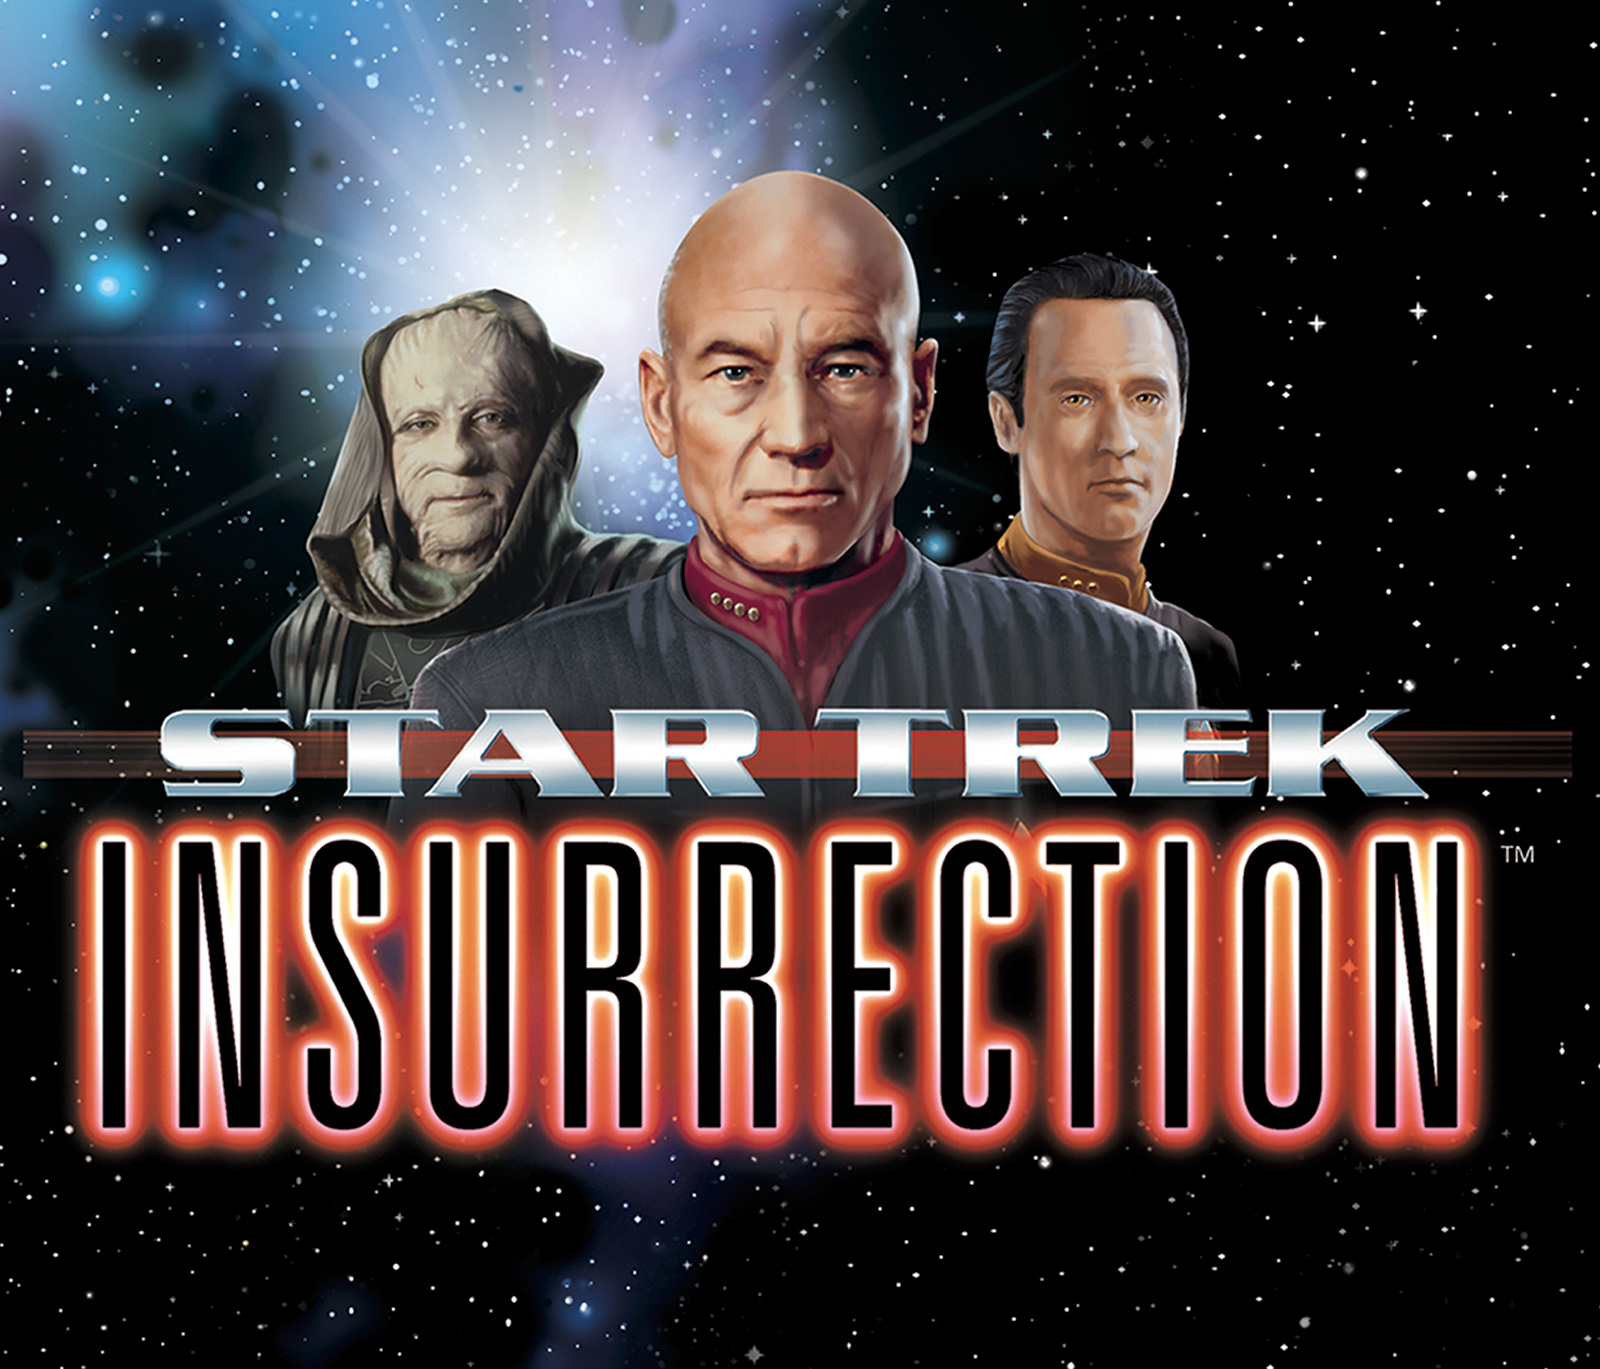 Star Trek: Insurrection Backgrounds, Compatible - PC, Mobile, Gadgets| 1600x1369 px